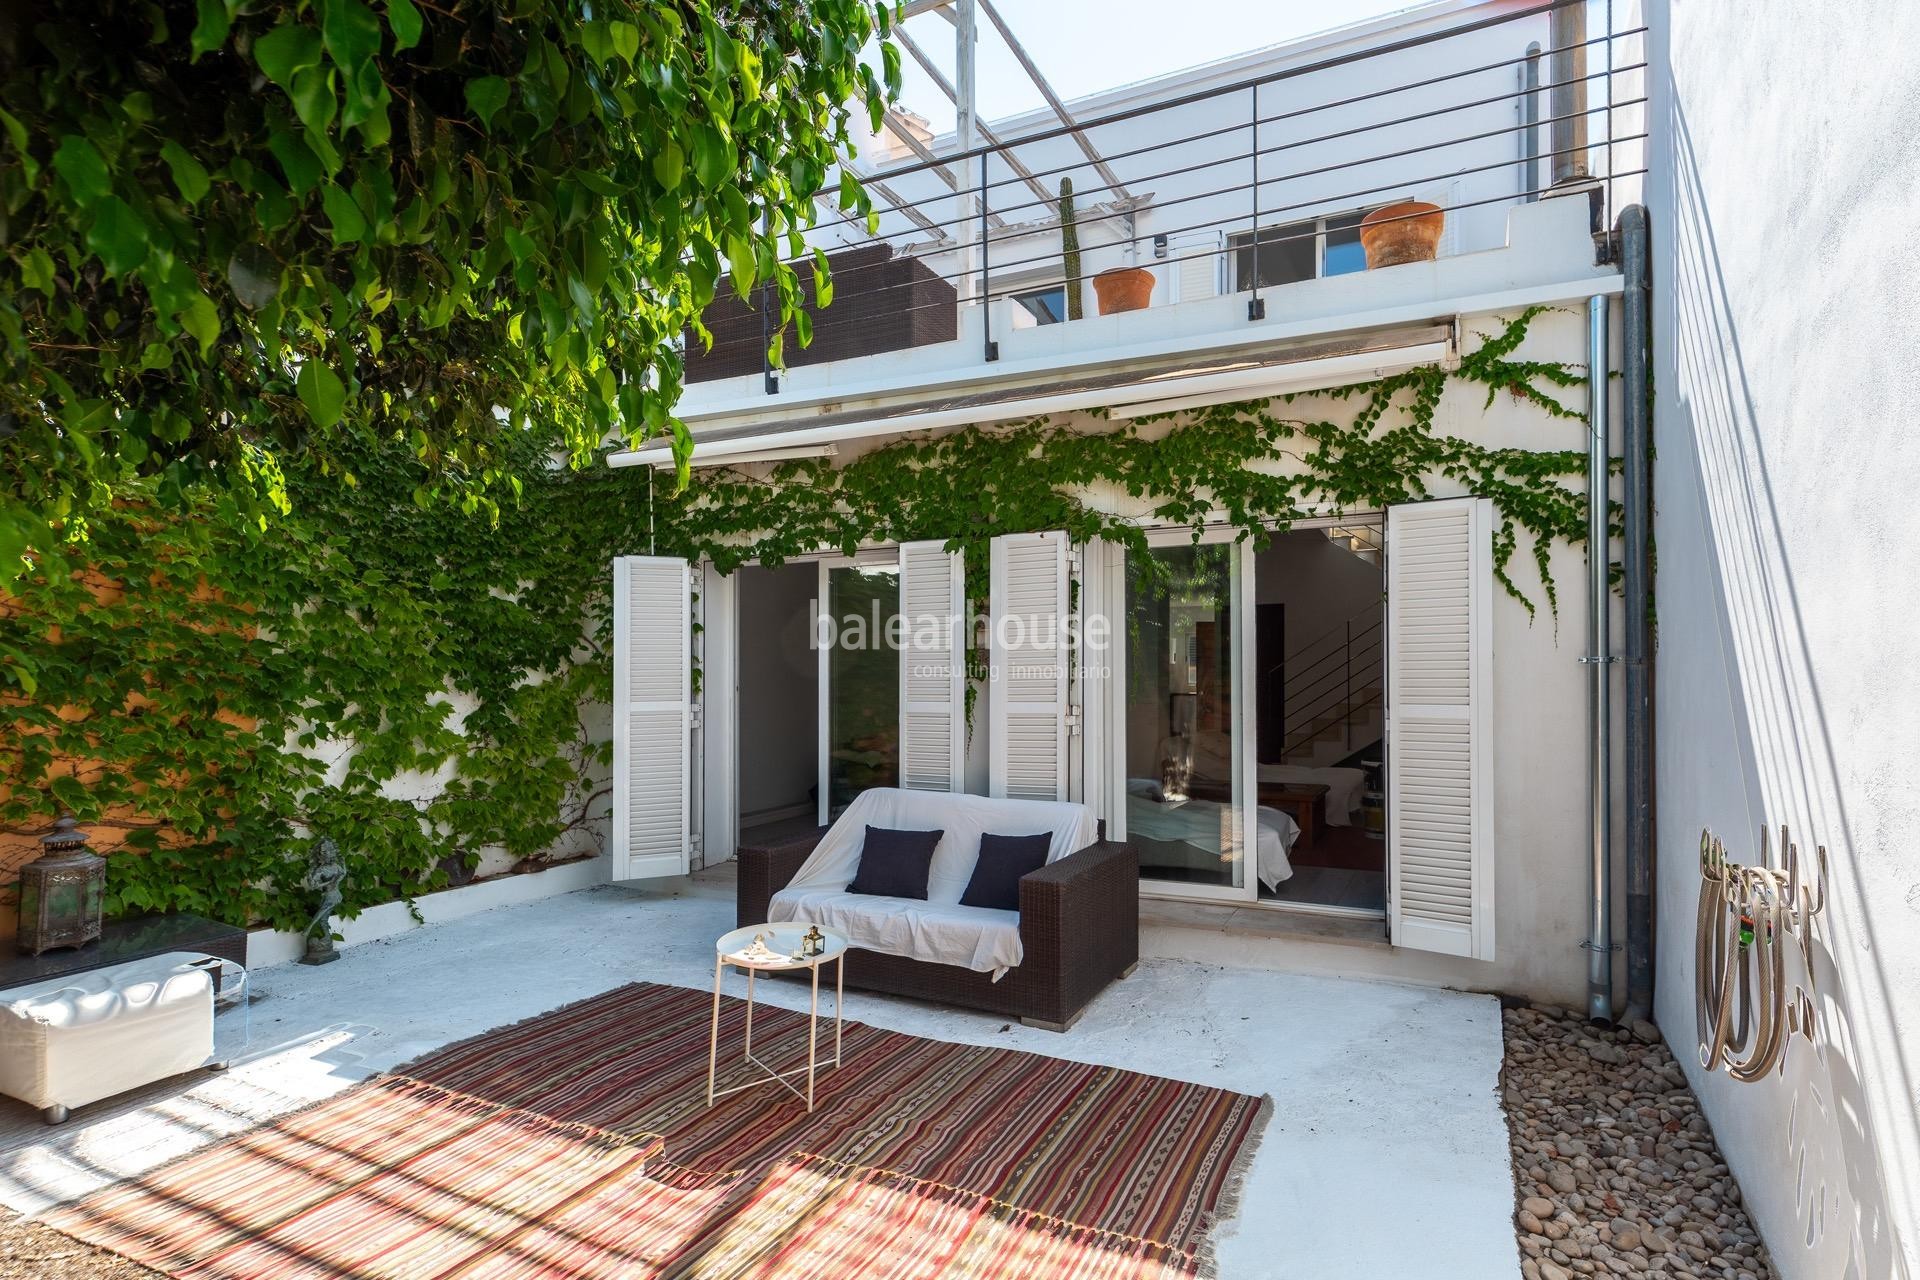 Helles Haus mit ausgezeichneten Terrassen in einer zentralen und ruhigen Gegend von Palma